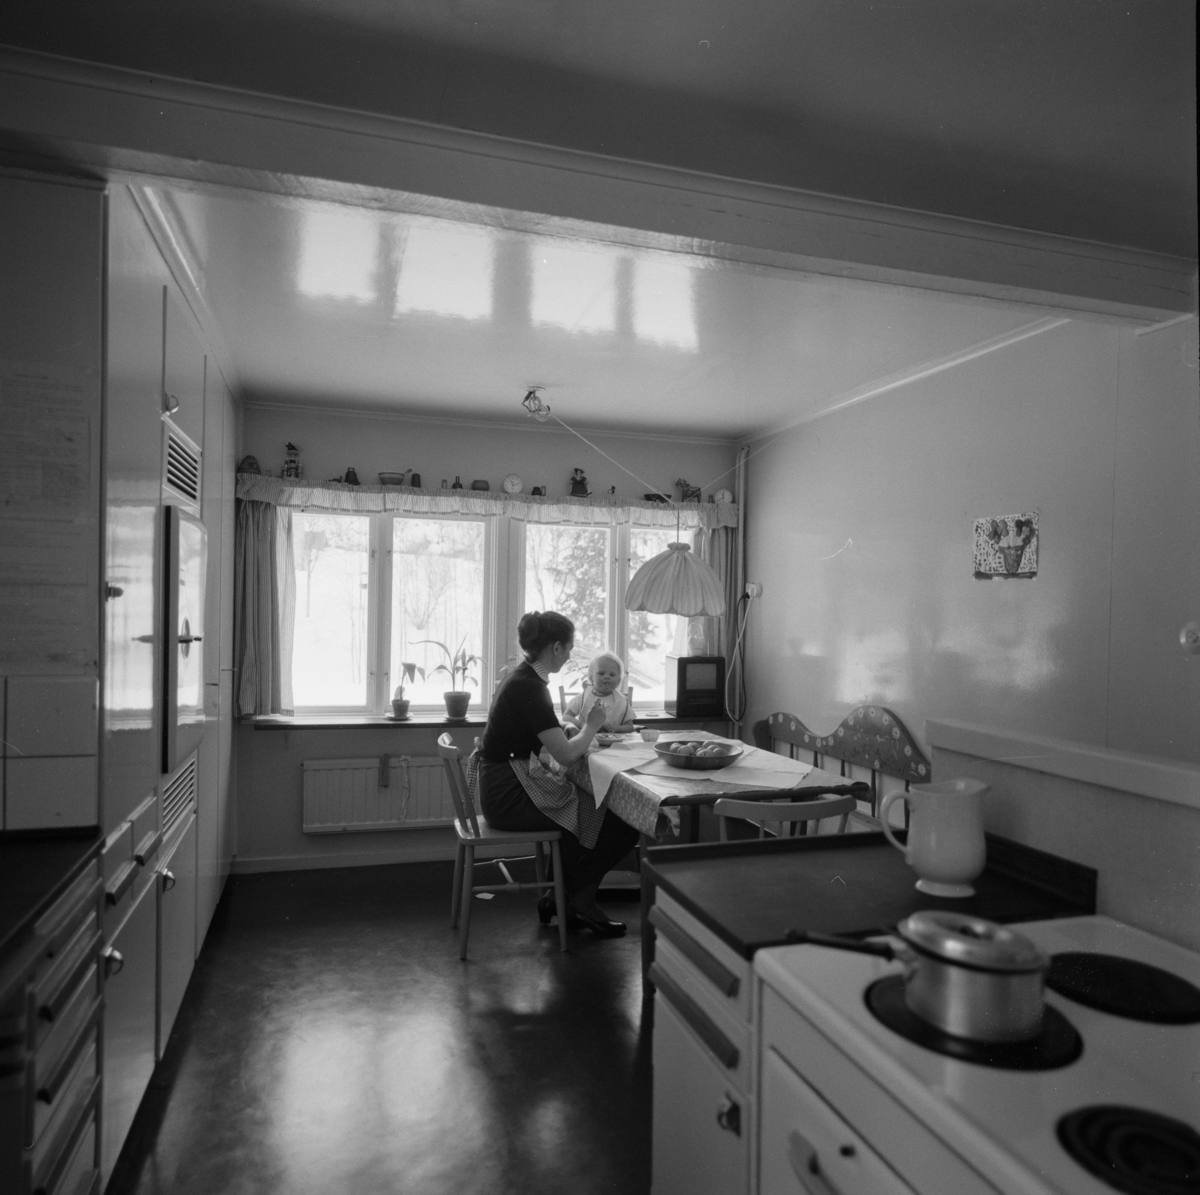 villa Ahlgren
Interiör av kök. Kvinna med barn i motljus mot fönster i fonden